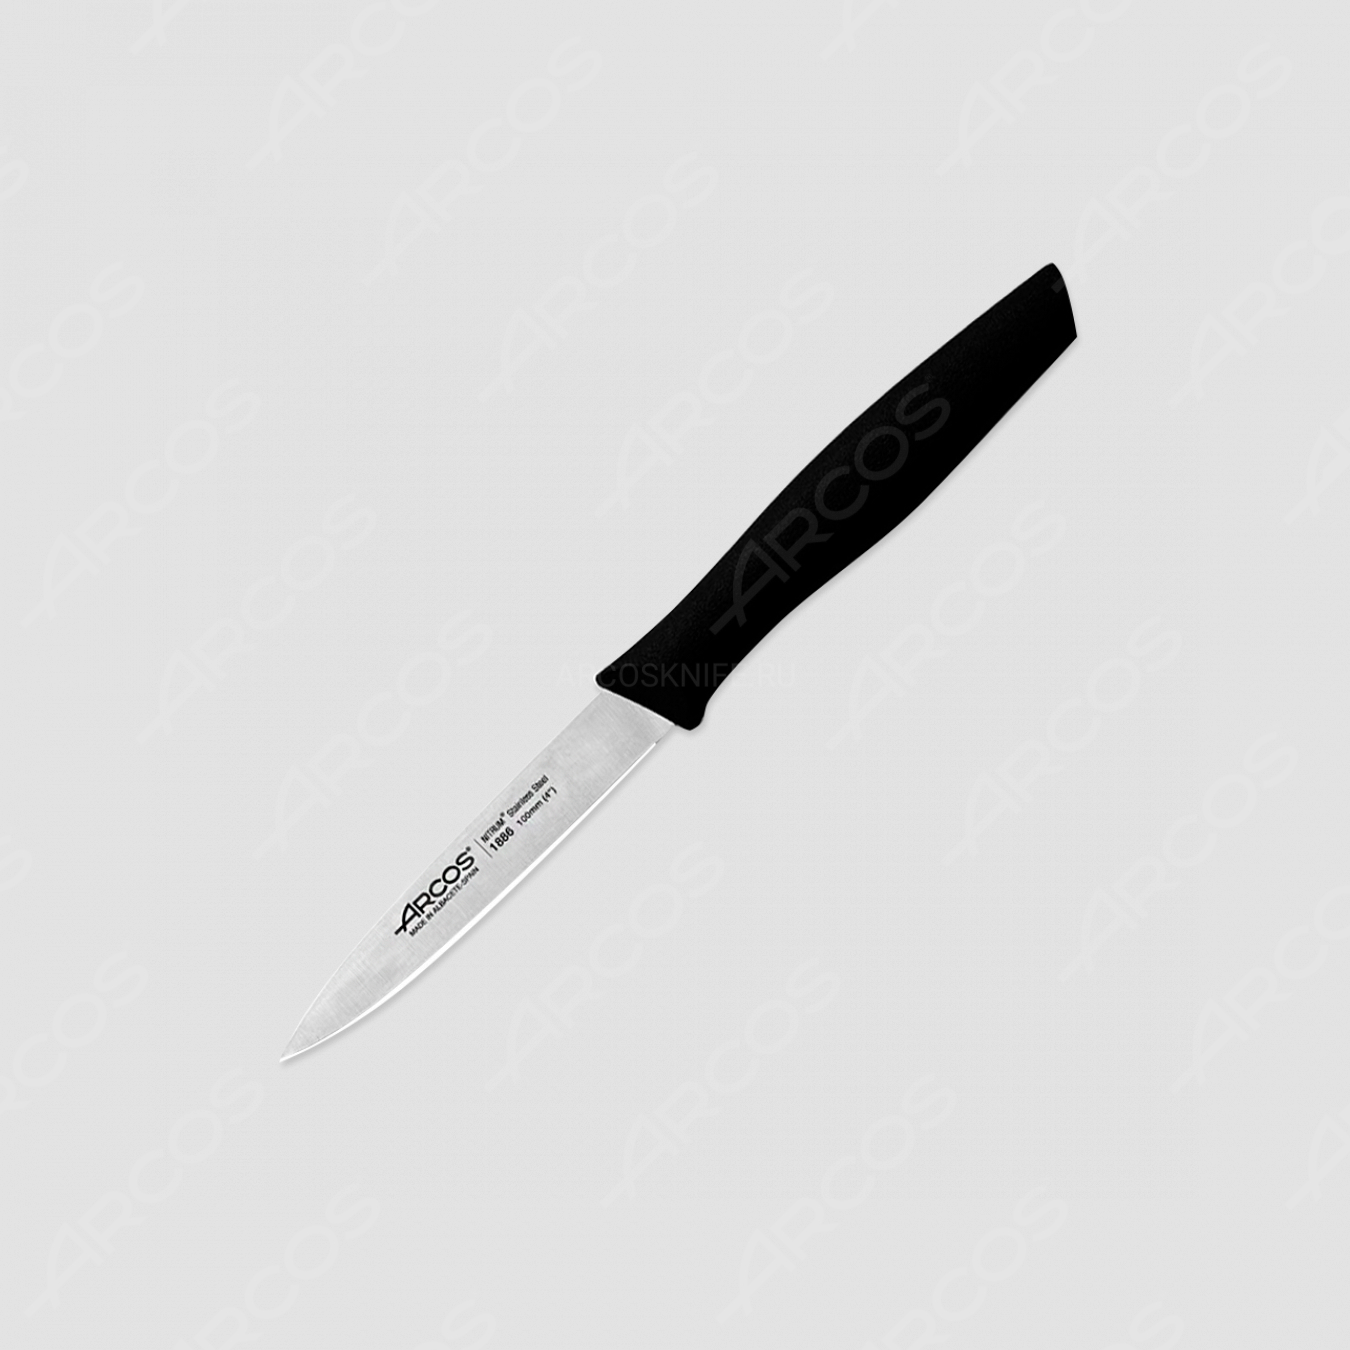 Нож кухонный для чистки 10 см, рукоять черная, серия Nova, ARCOS, Испания